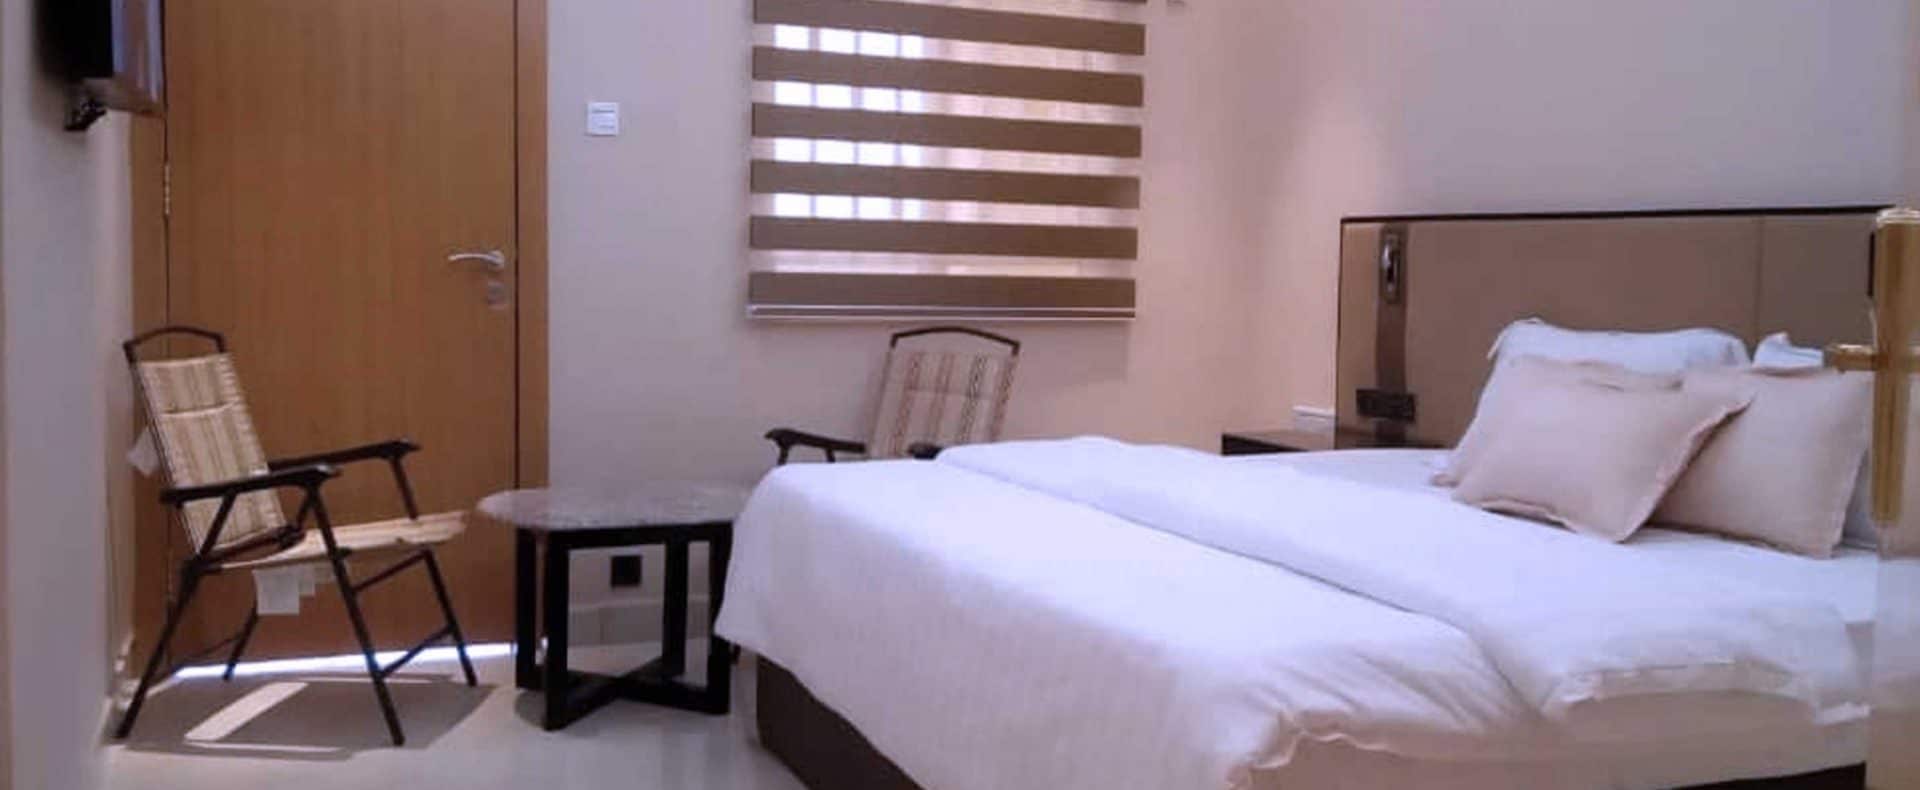 Hotel Exchequer Room In Owerri Nigeria